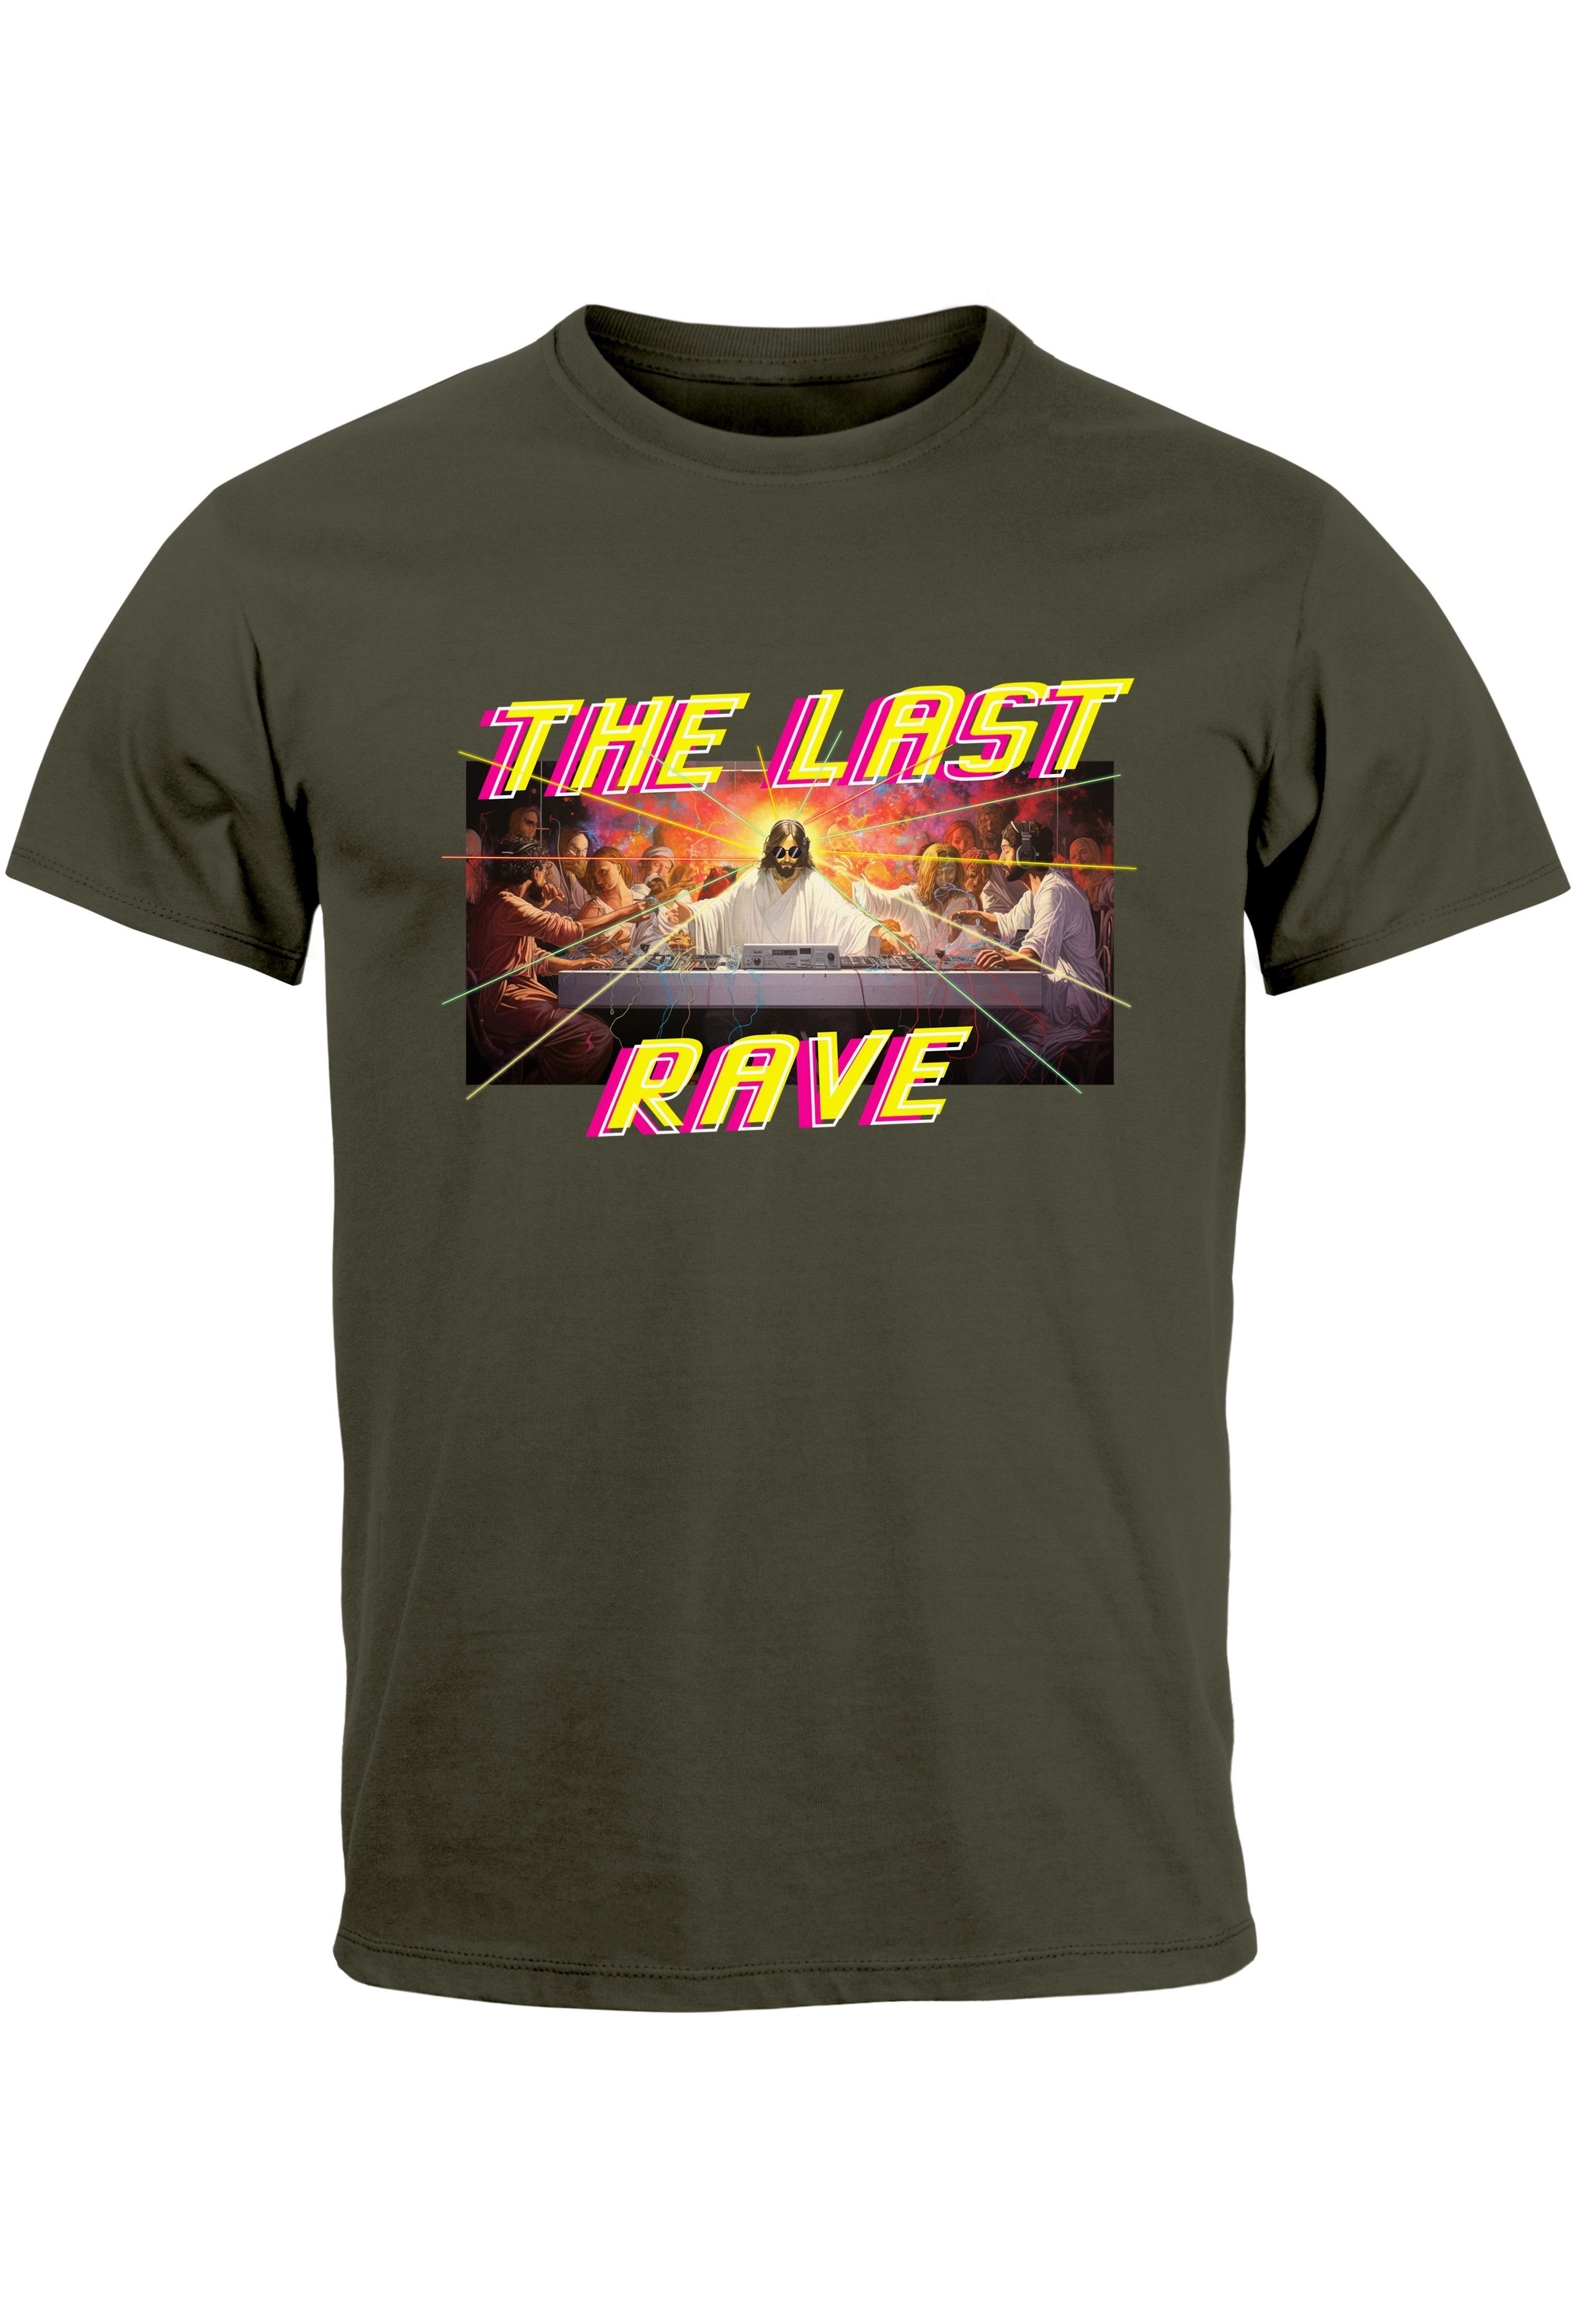 Neverless Print-Shirt Herren T-Shirt Techno The Last Rave Parodie Das letzte Abendmahl Jesus mit Print army